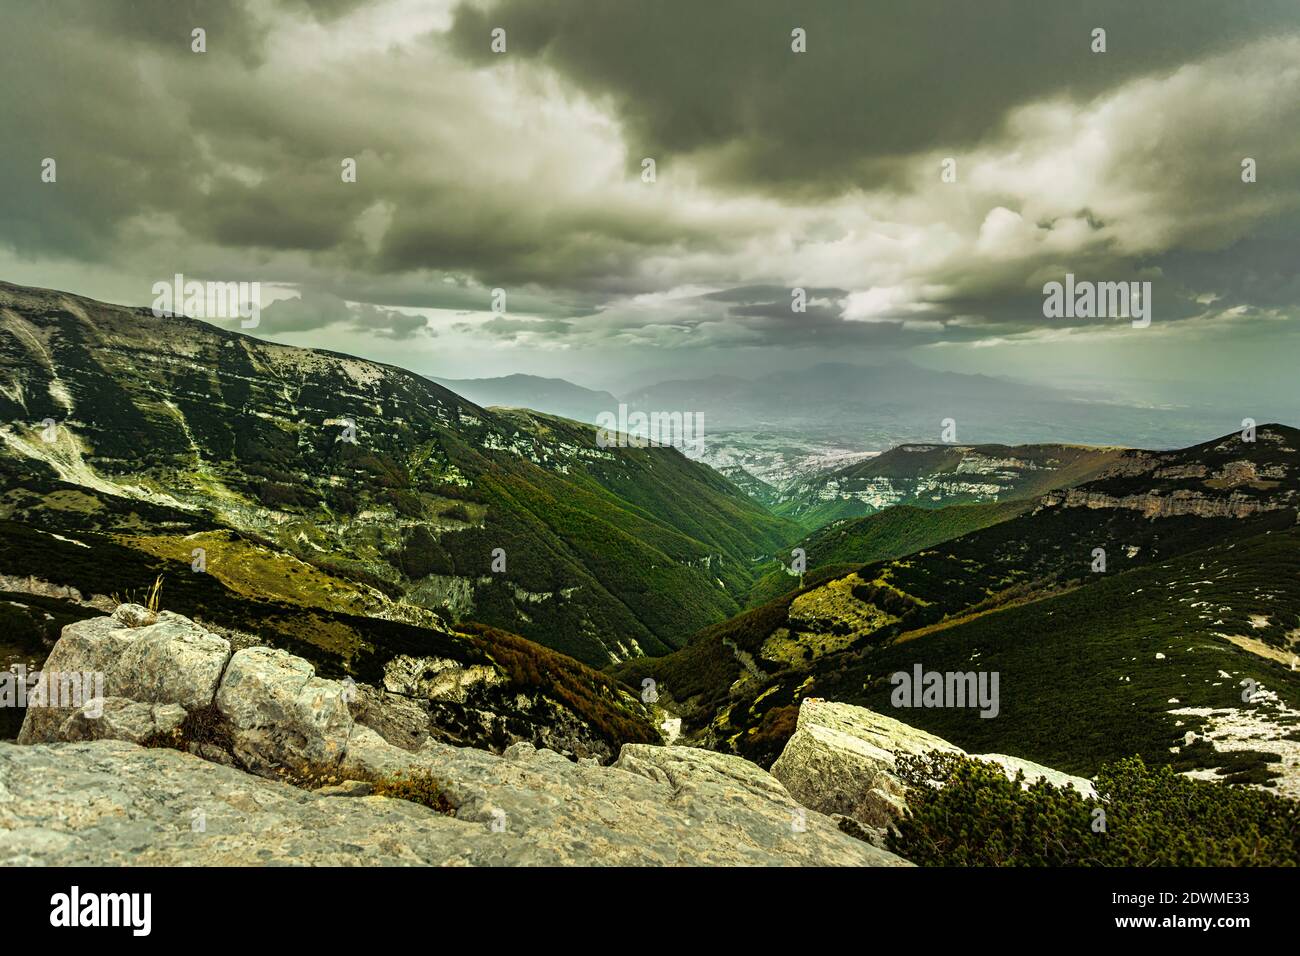 Depuis le chemin de la 'Tavola dei Briganti', la vue s'étend sur le panorama de la vallée de l'Orfento. Abruzzes, Italie, Europe Banque D'Images